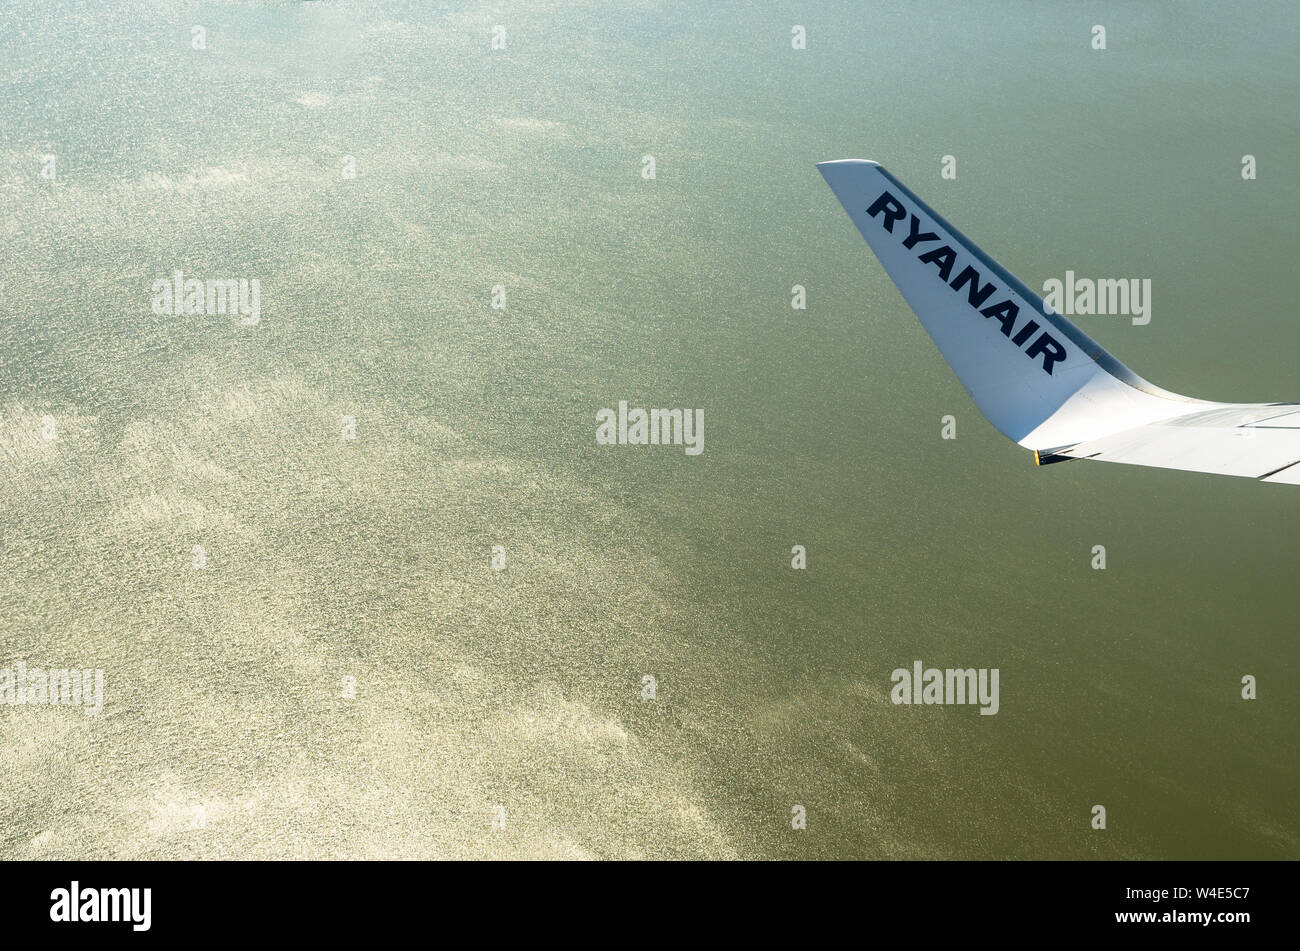 Ryainair Aircraft wingtip against the sea Stock Photo